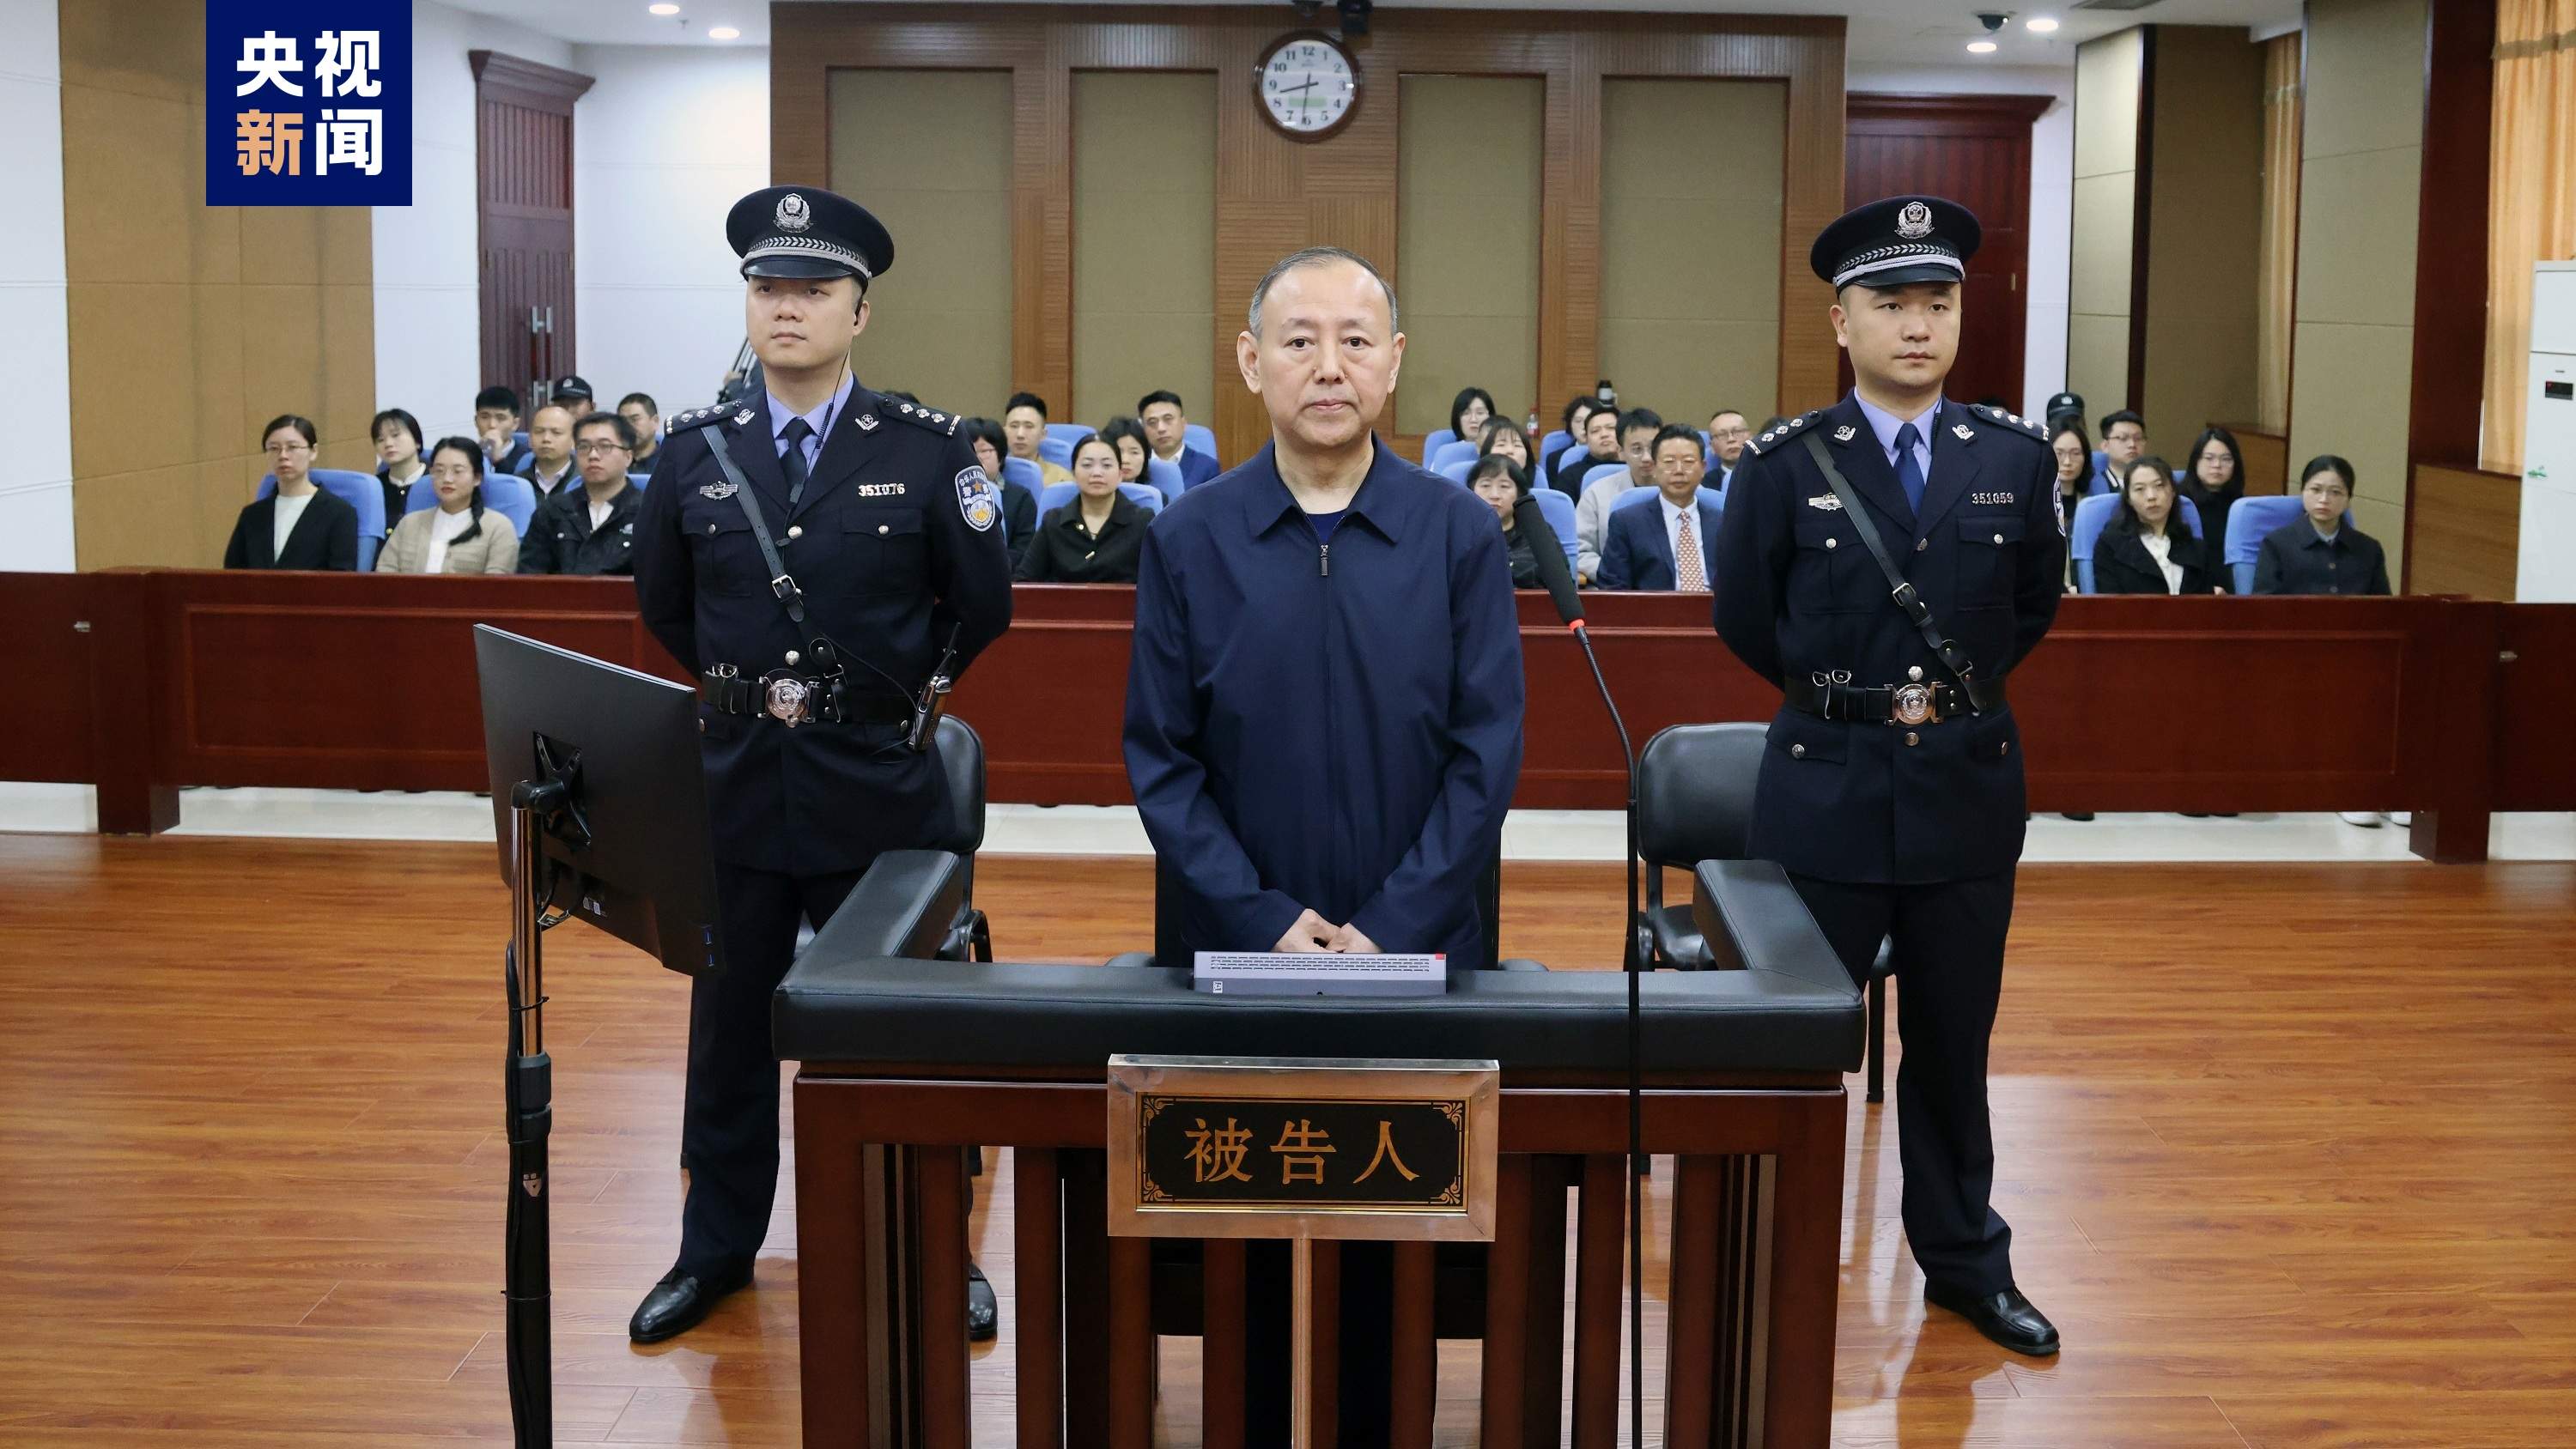 原应急执掌部消防拯济局副局长张福生受贿案一审开庭